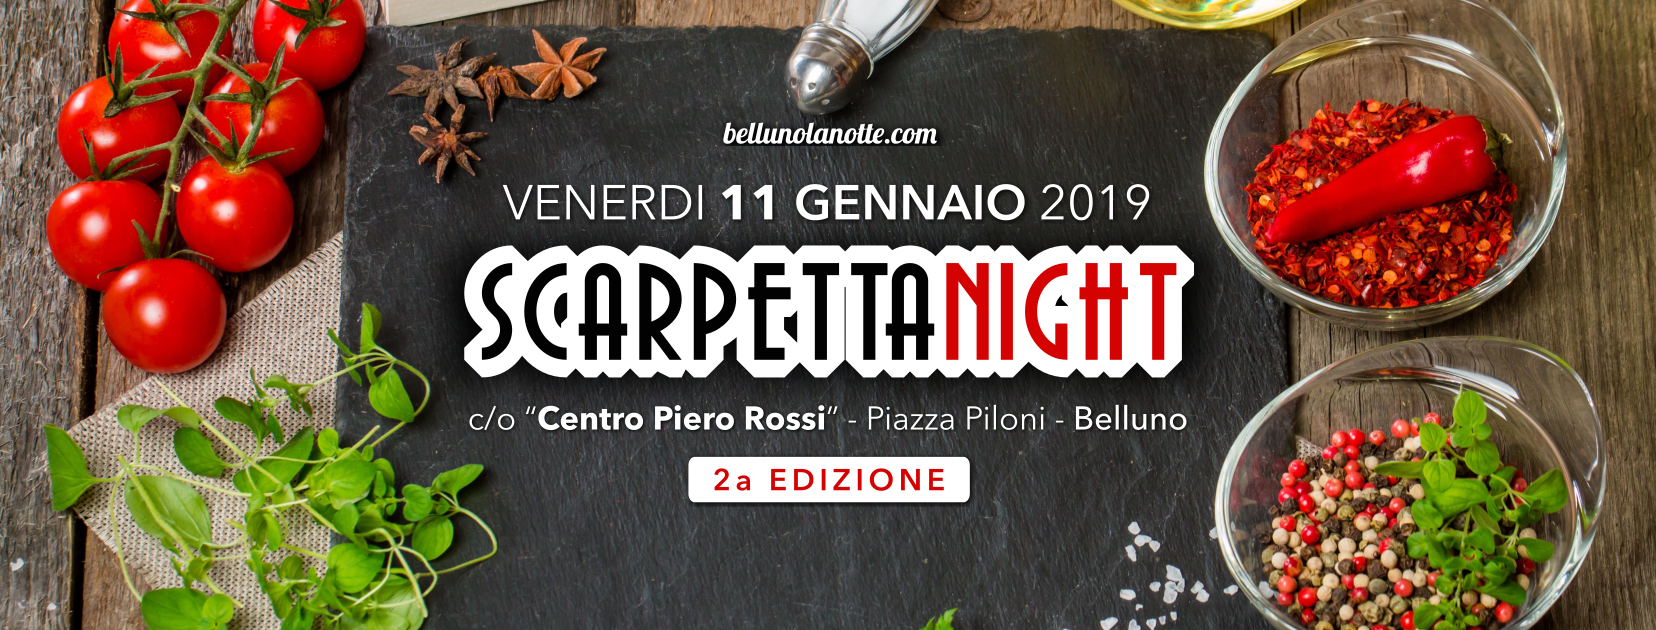 Scarpetta Night 2019 - Belluno